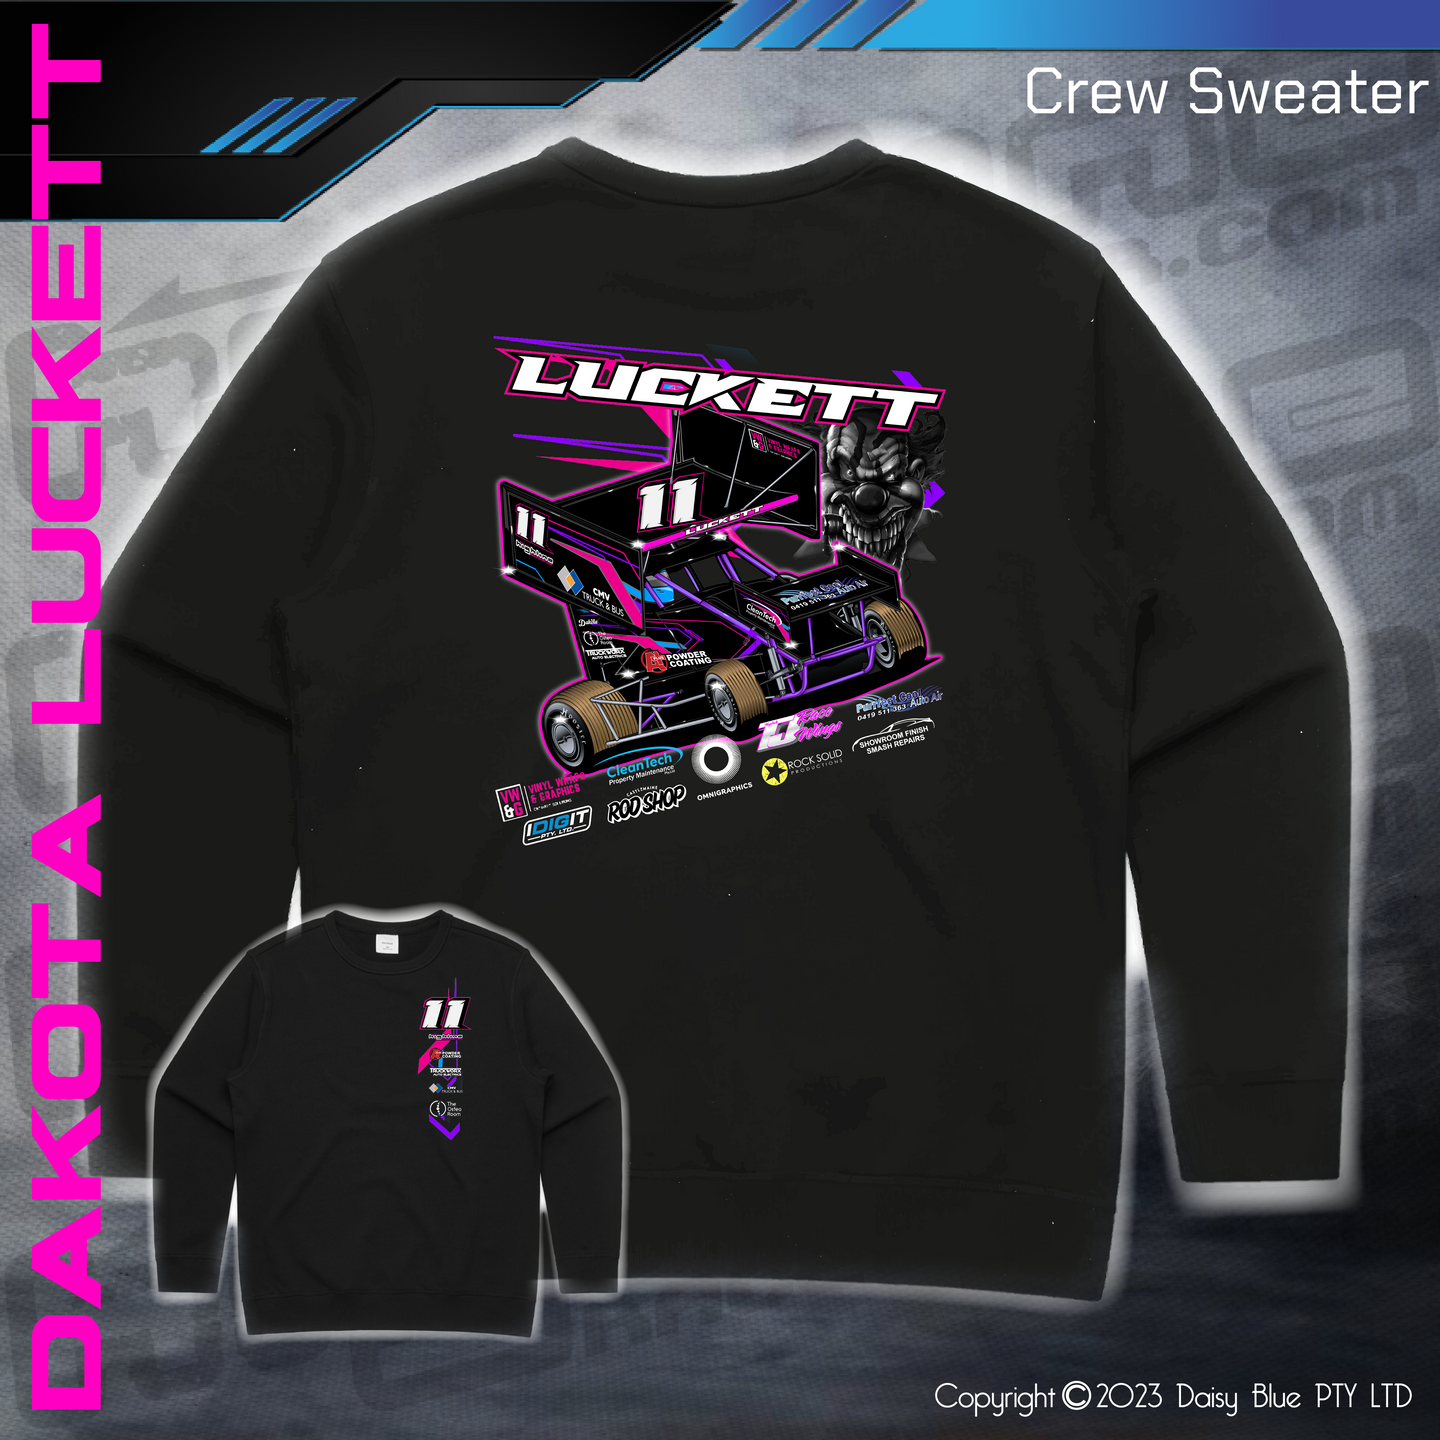 Crew Sweater - Dakota Luckett